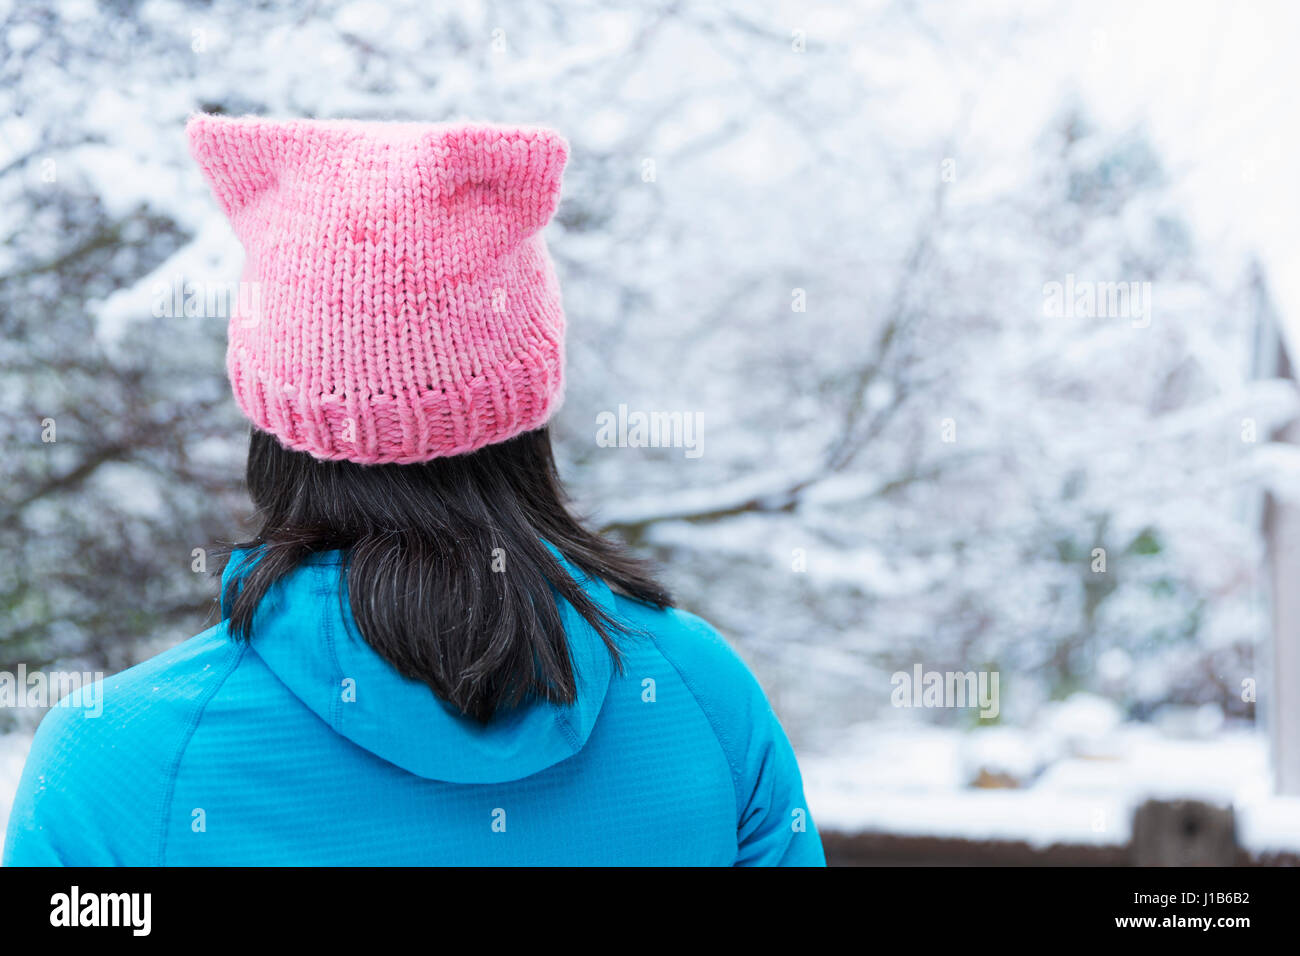 Japanese woman wearing pink hat avec les oreilles Banque D'Images